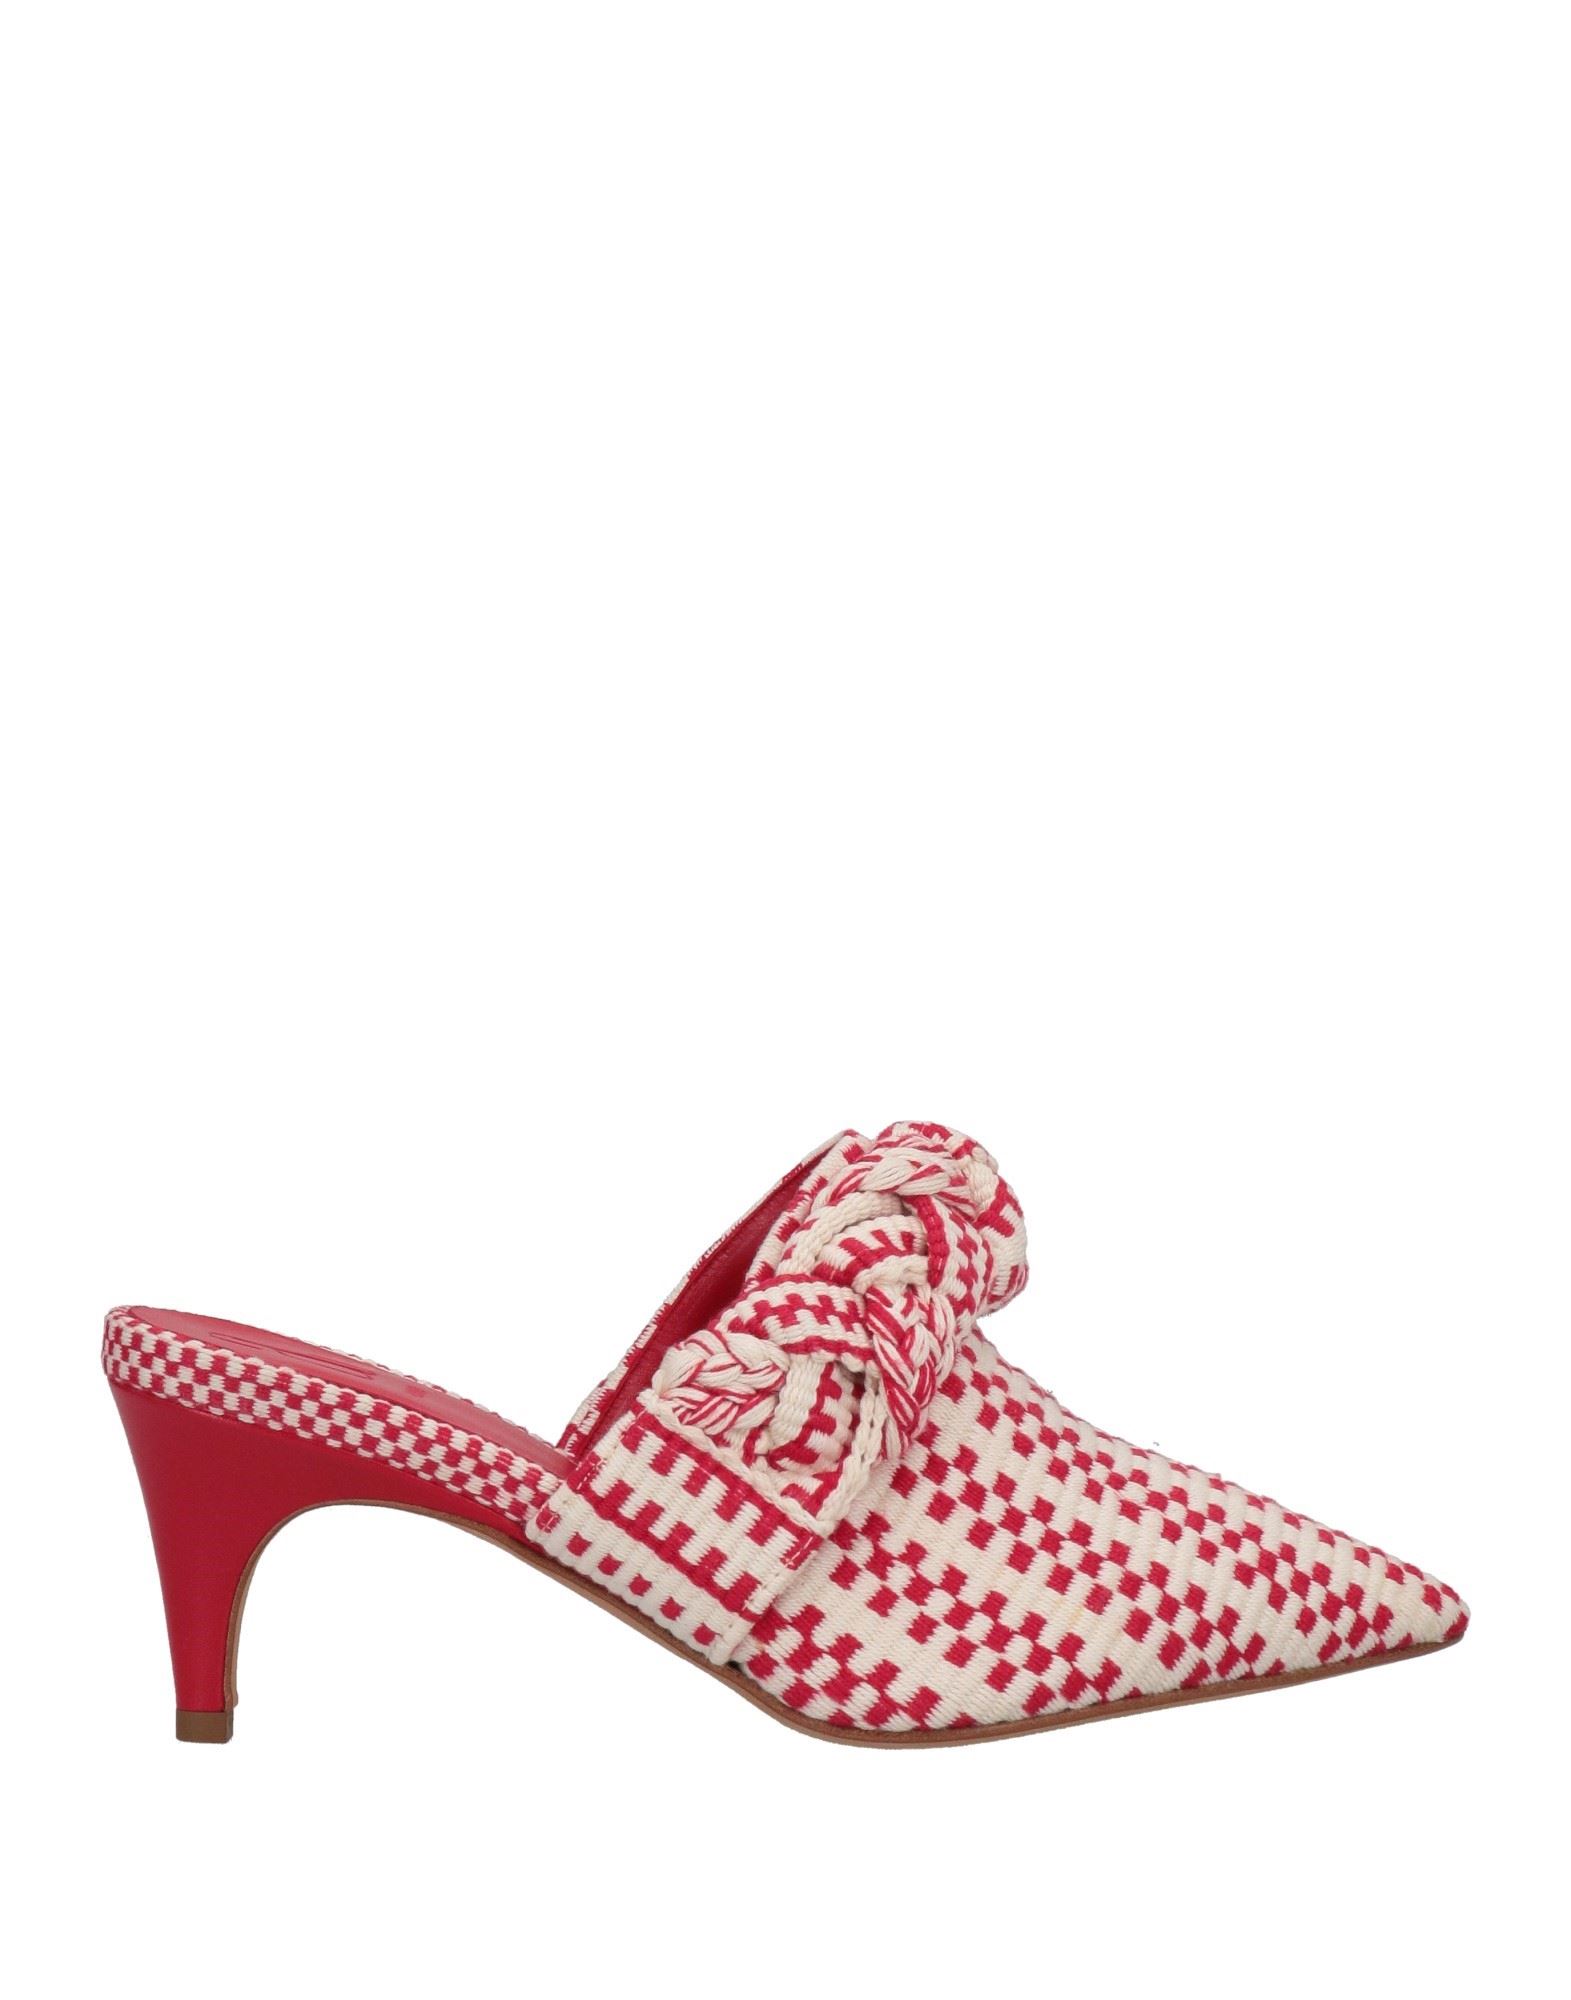 Antolina Paris Woman Mules & Clogs Red Size 11 Textile Fibers